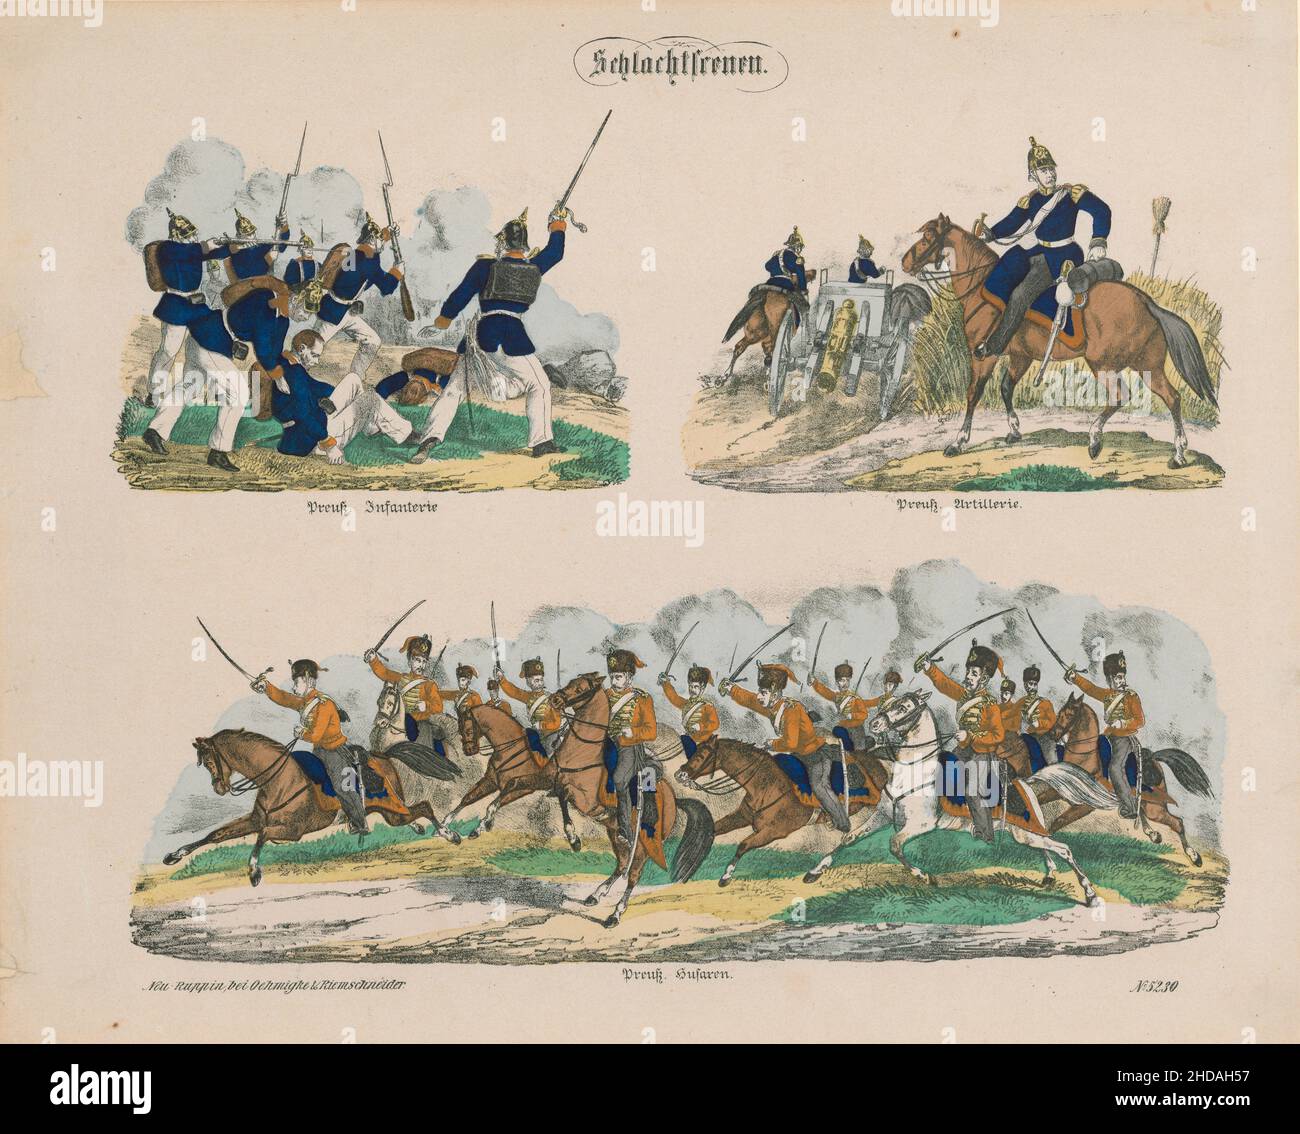 Lithographie d'époque : armée prussienne dans les scènes de bataille.1866 Infanterie prussienne, artillerie prussienne, hussards prussiens Banque D'Images